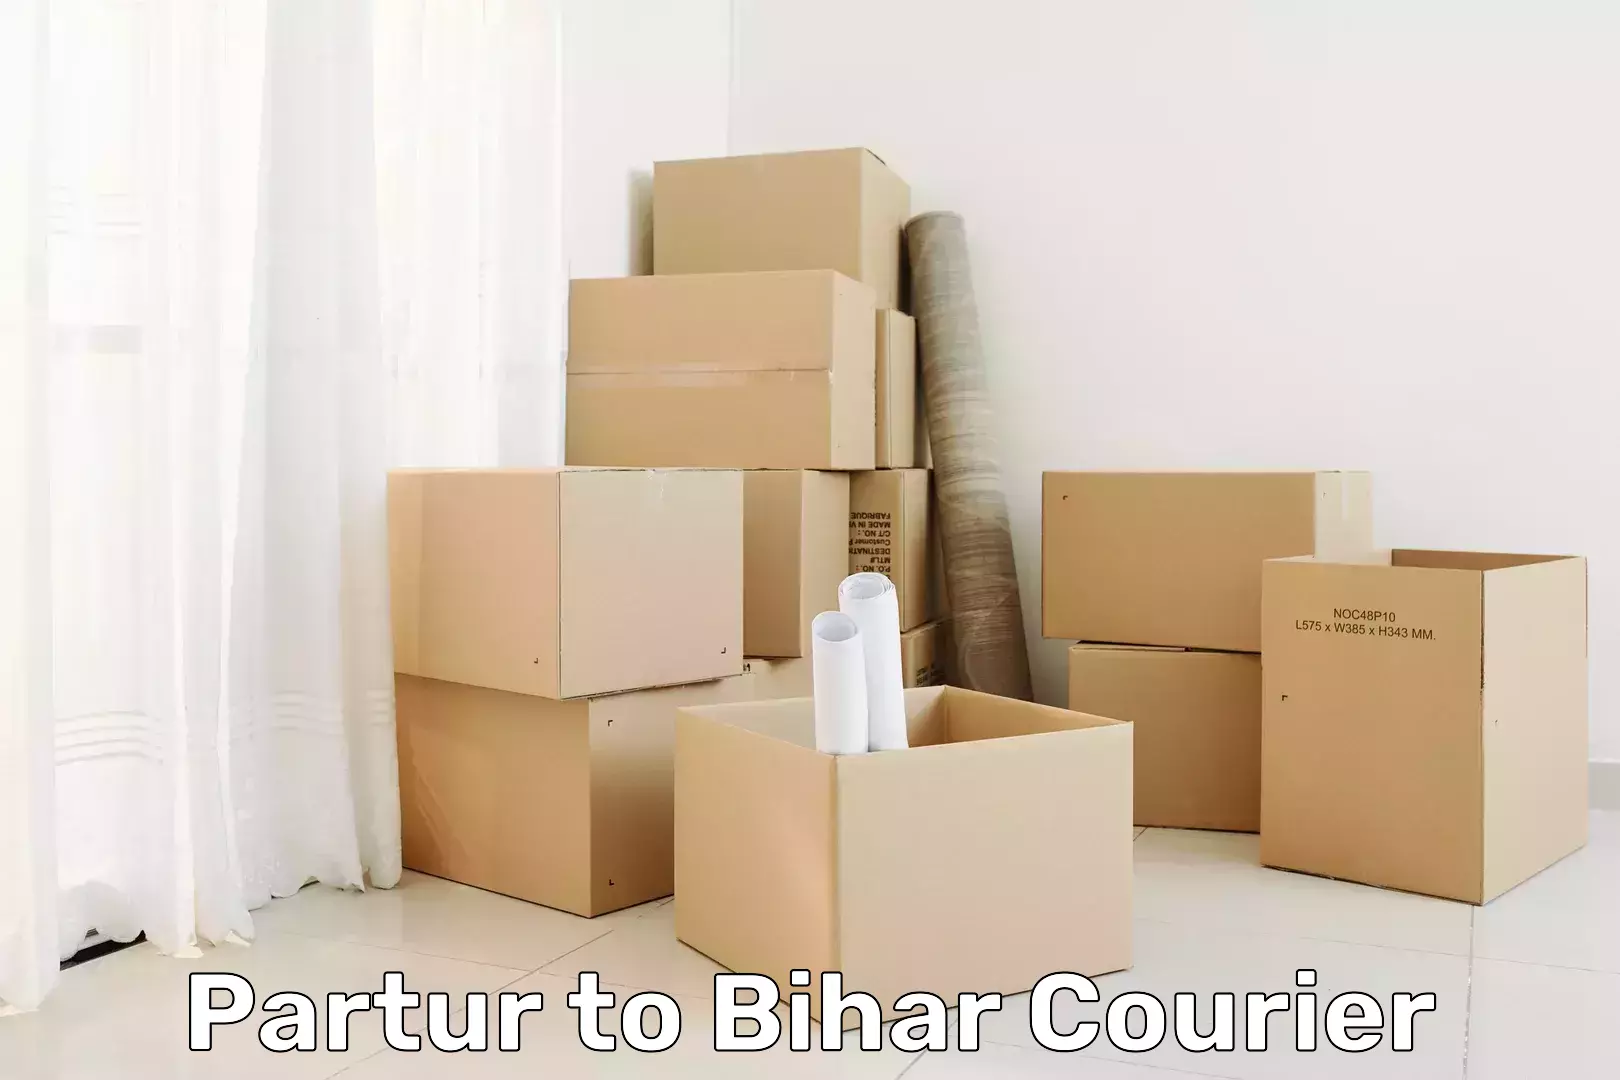 Return courier service Partur to Bihar